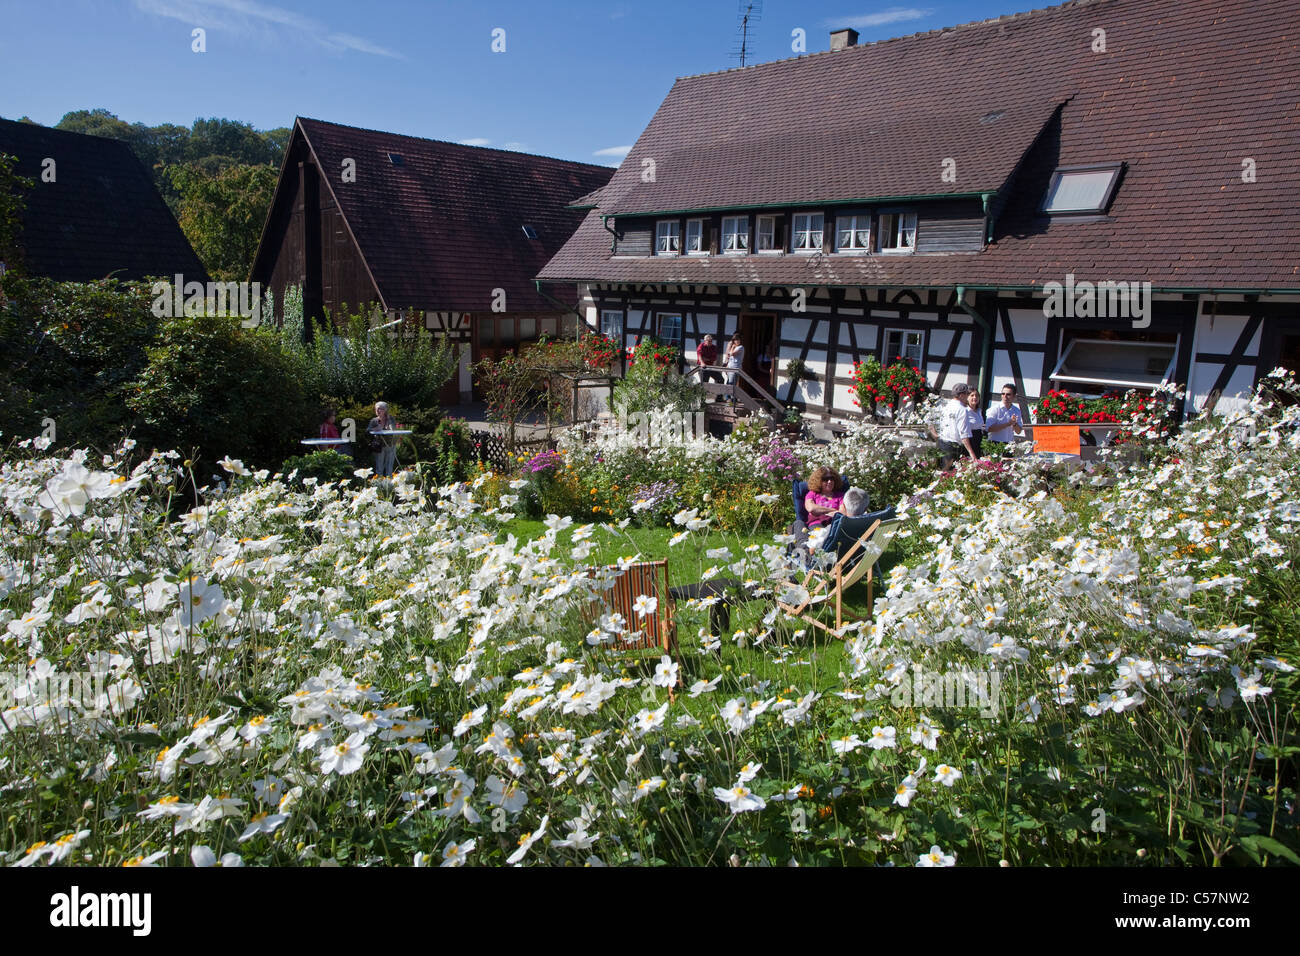 Bauernhaus und Bauerngarten in Sasbachwalden, Herbstanemonen, Anemone altaica,Half-timbered house and flower garden, Windflower Stock Photo